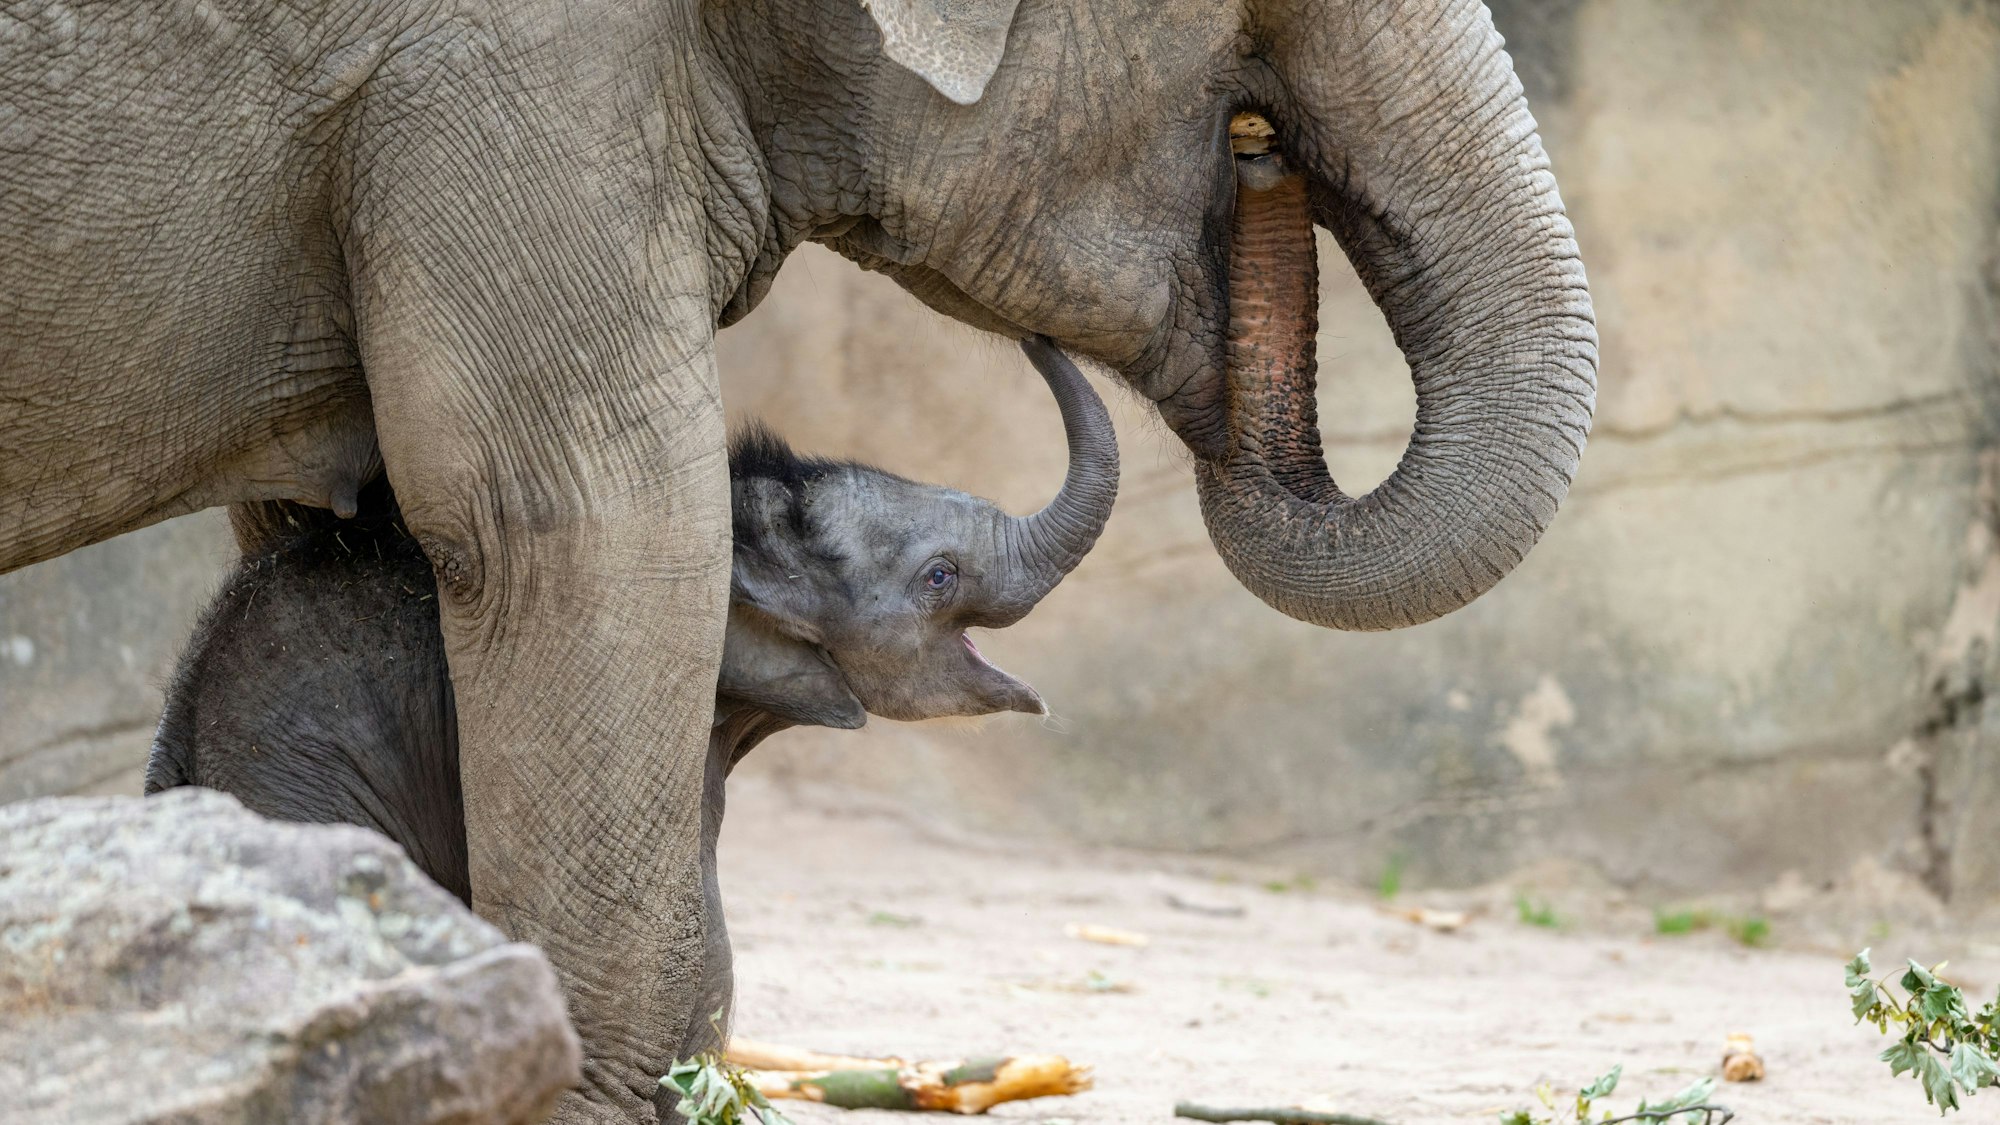 Das Elefantenbaby Sarinya steht unter einem großen Elefanten und lacht.